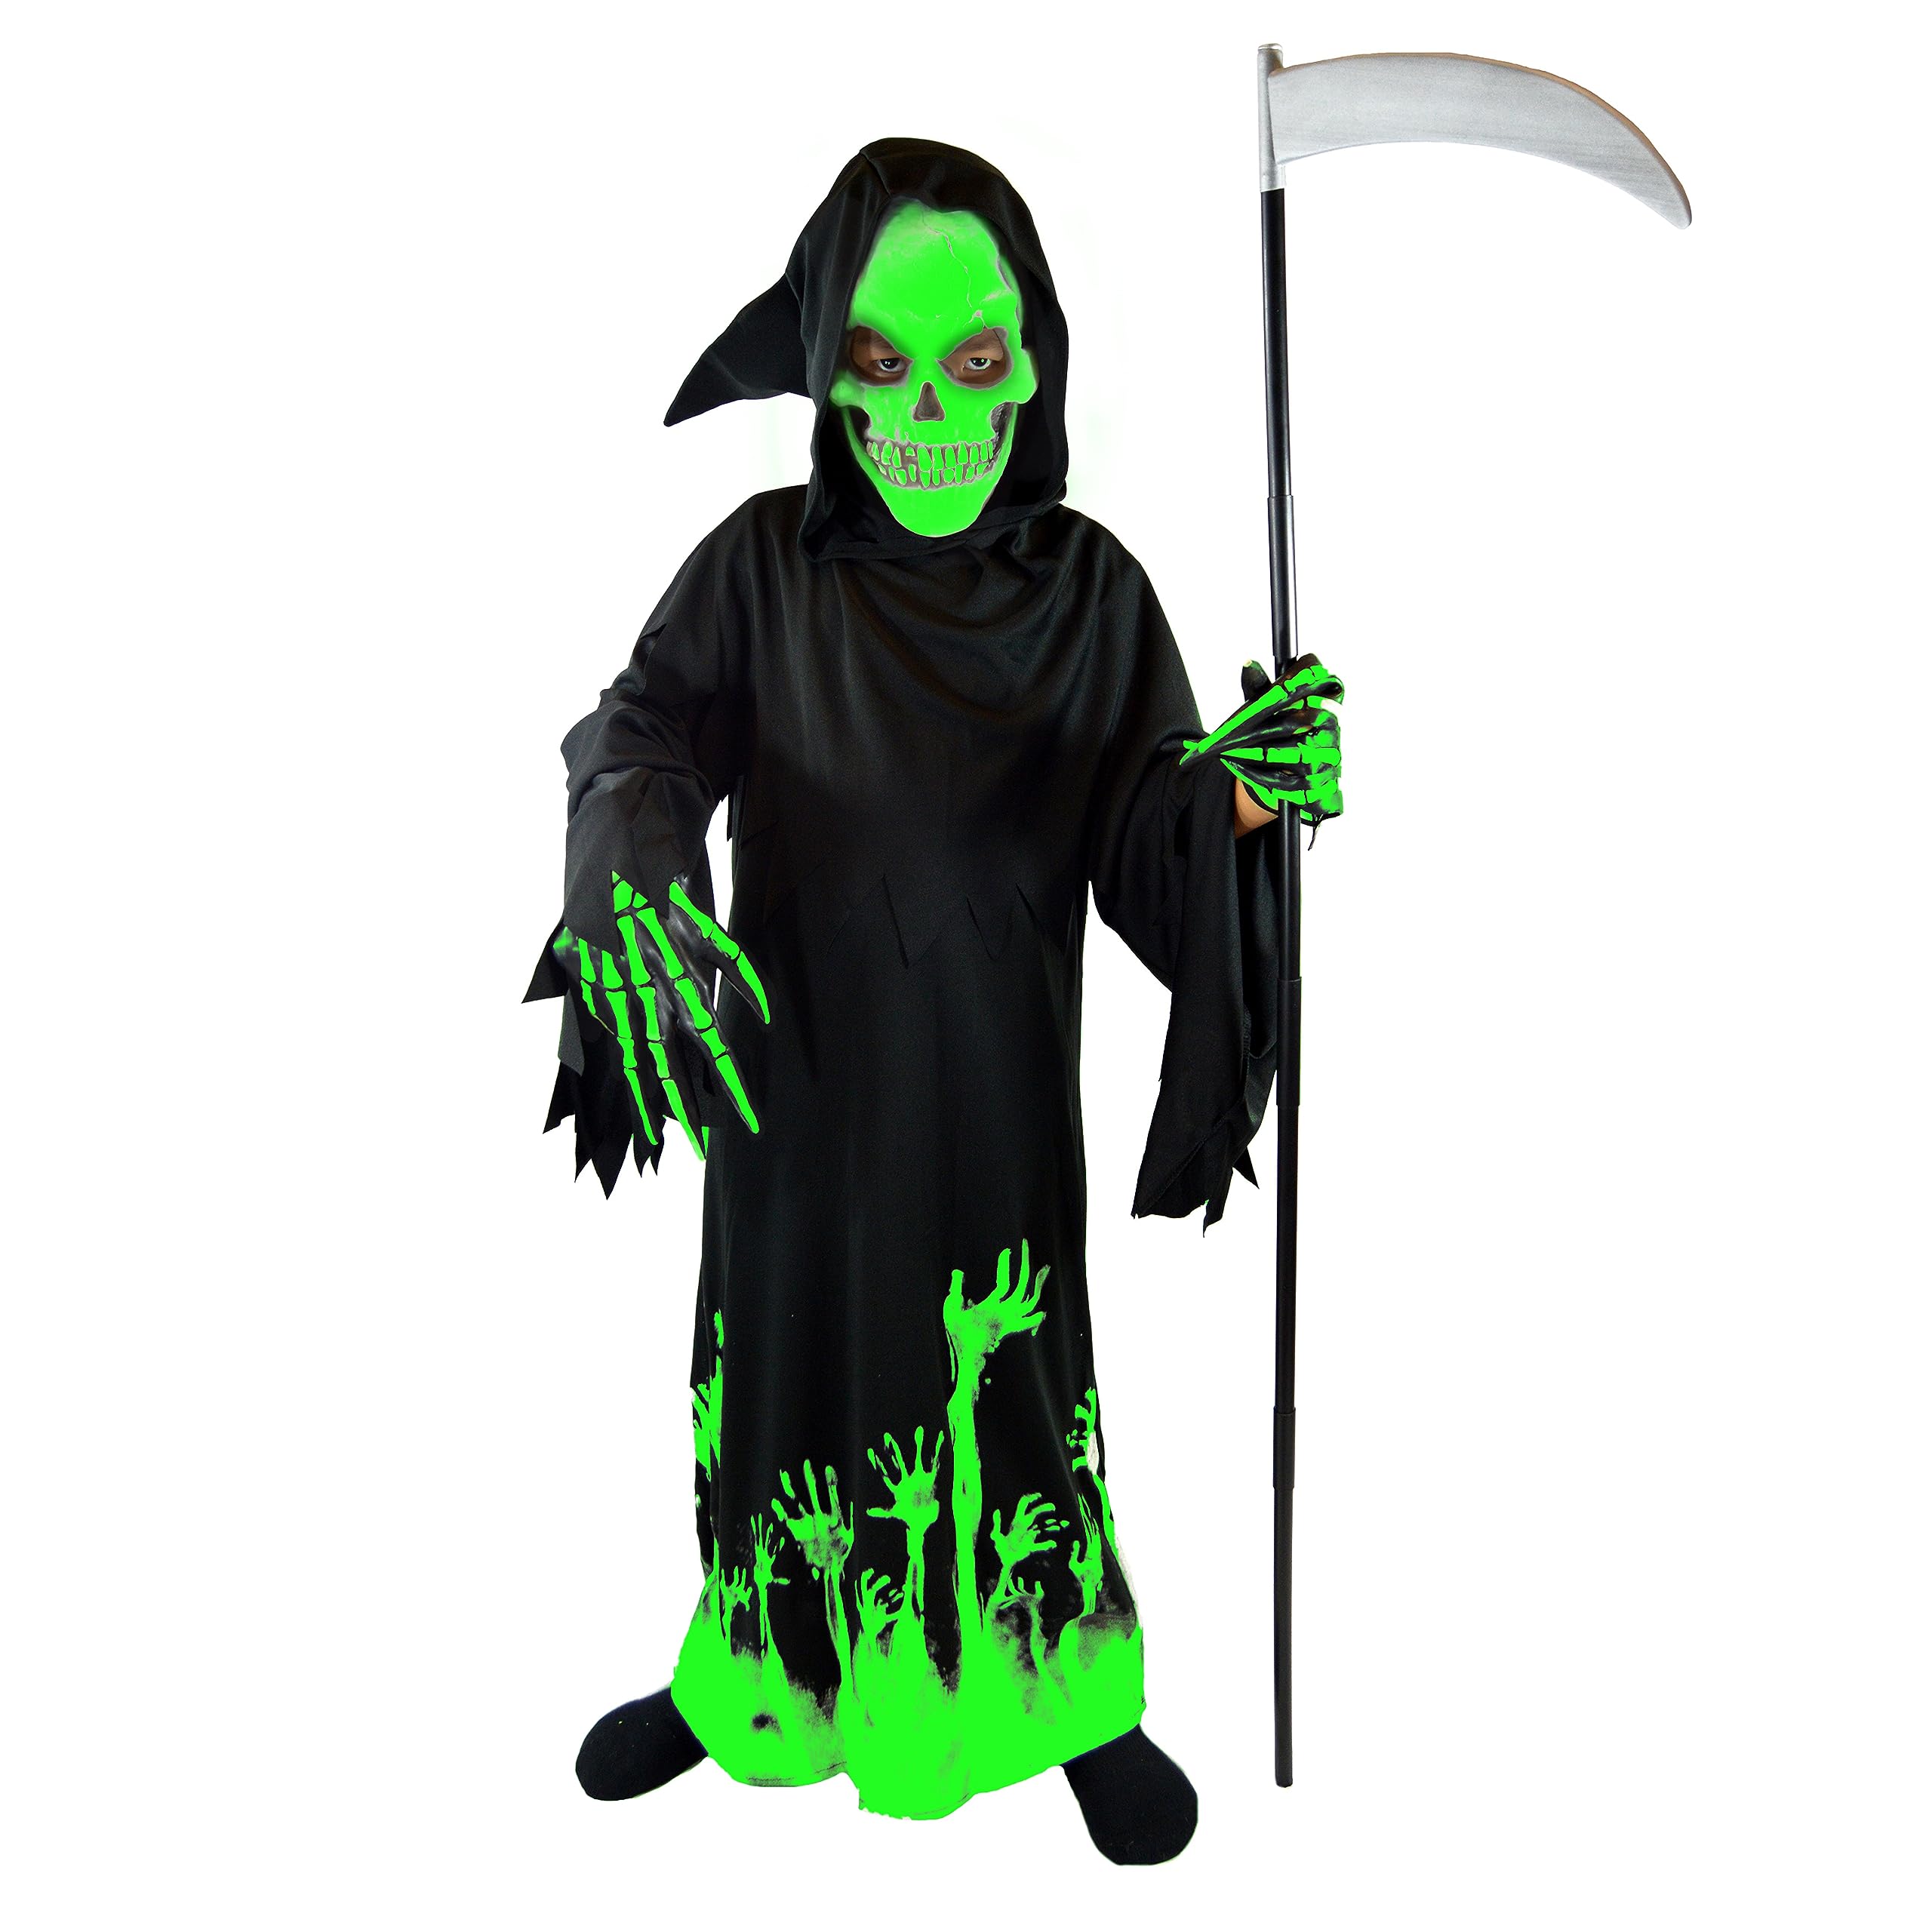 Spooktacular Creations Kids Grim Reaper Glow in the Dark Deluxe Phantom Costume, Halloween Grim Reaper Costume for Party